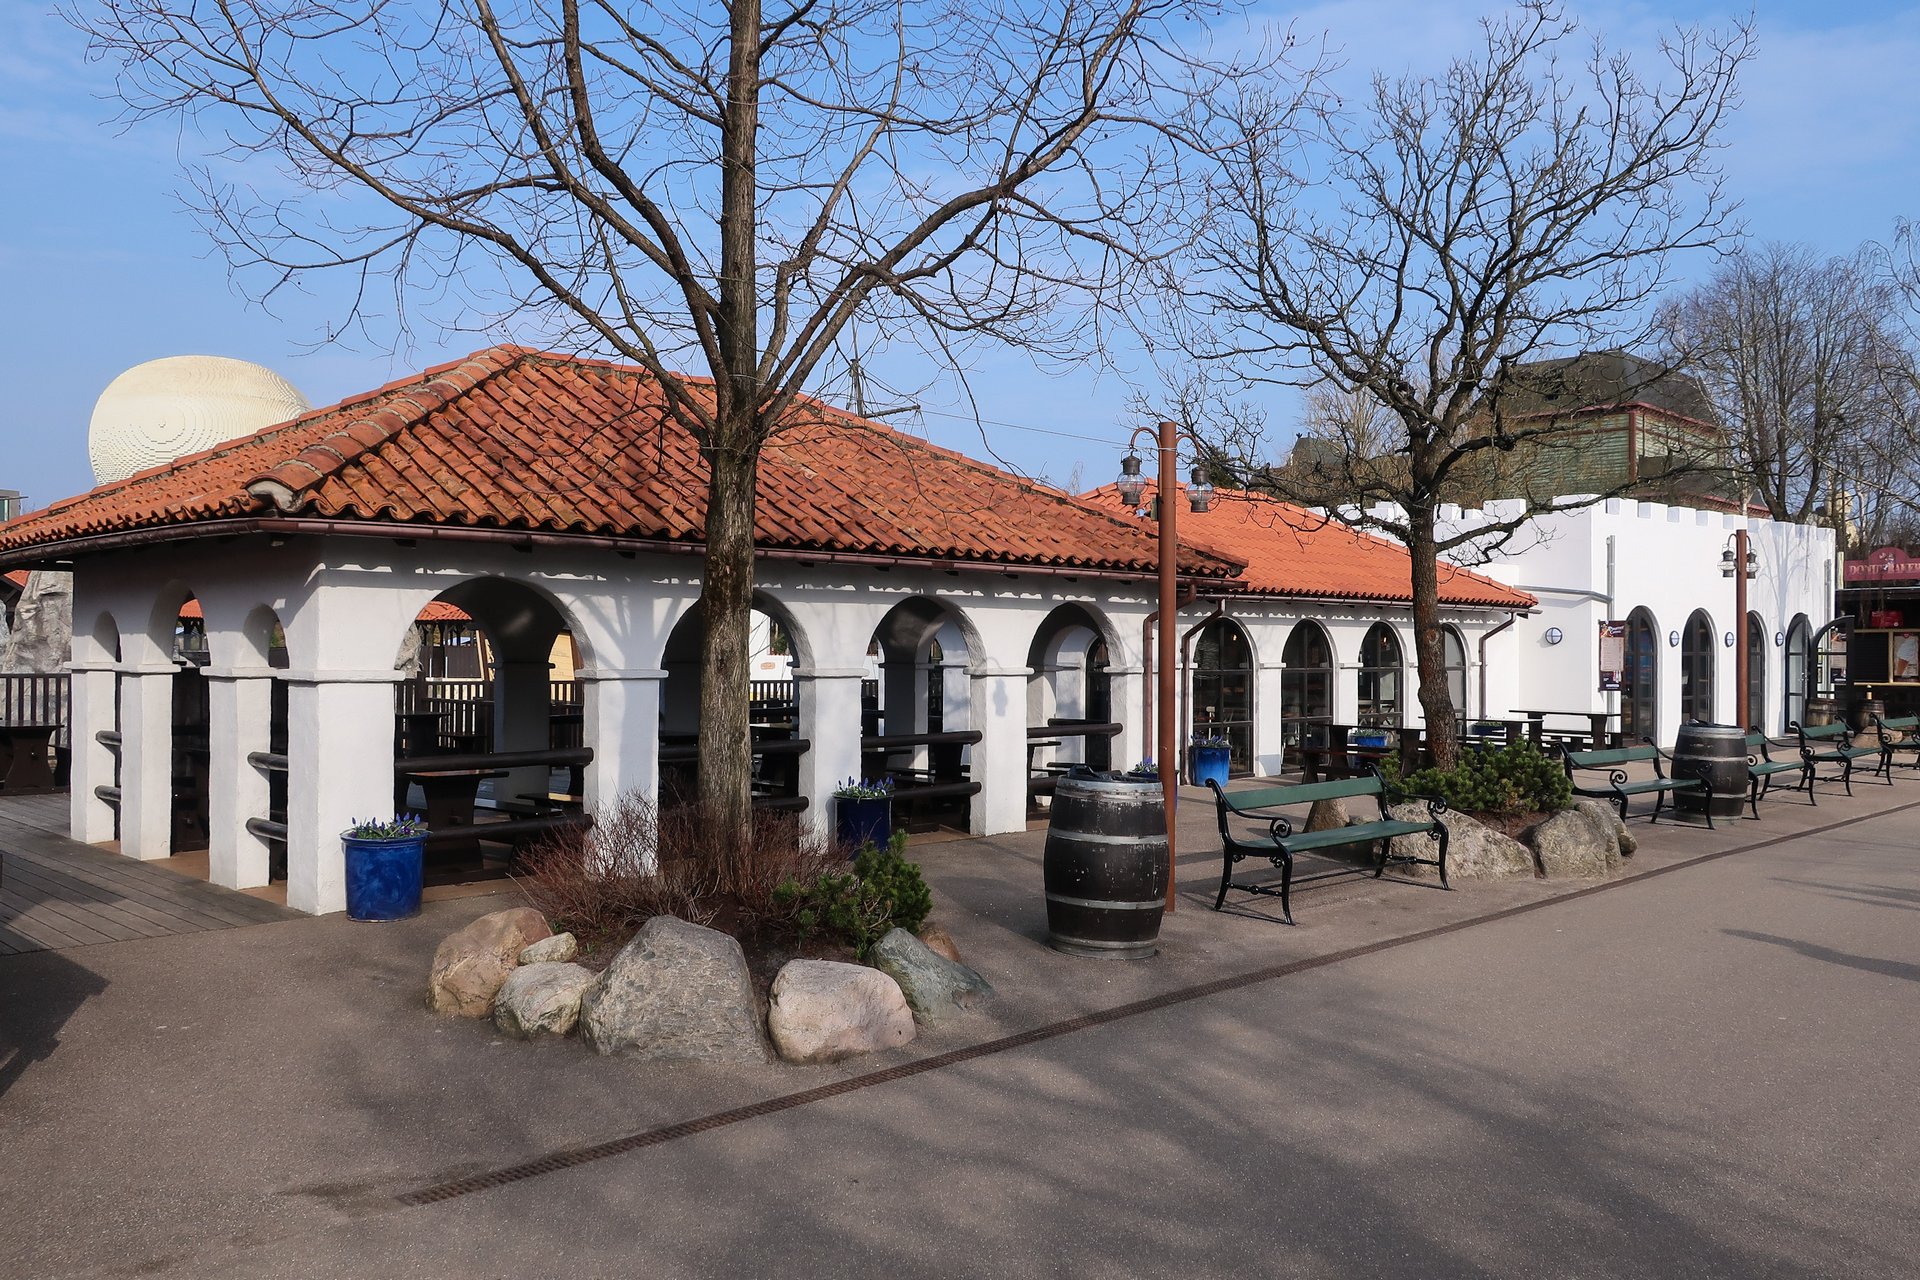 Ресторан в парке развлечений Леголенд в Дании